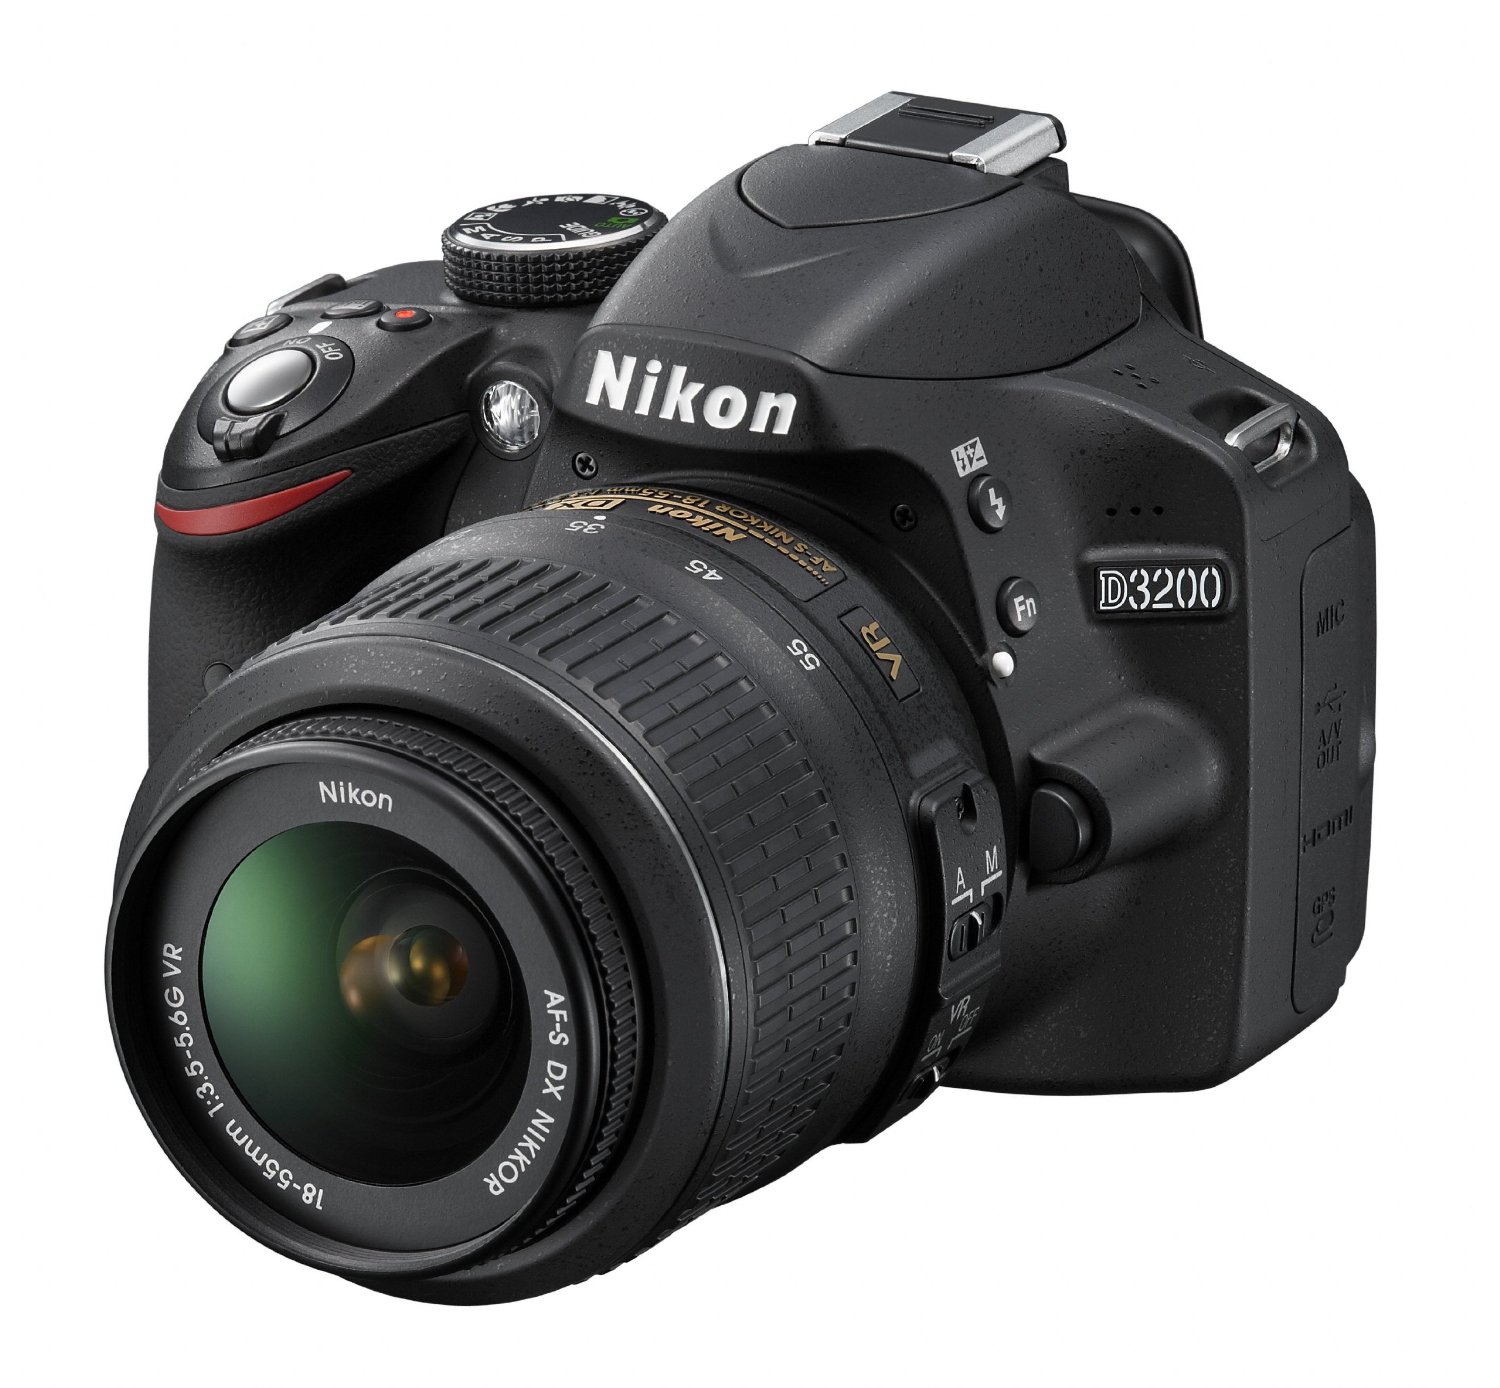 Nikon D3200 24.2 MP CMOS Digital SLR with 18-55mm f/3.5-5.6 AF-S DX VR NIKKOR Zoom Lens (Black)  $596.95